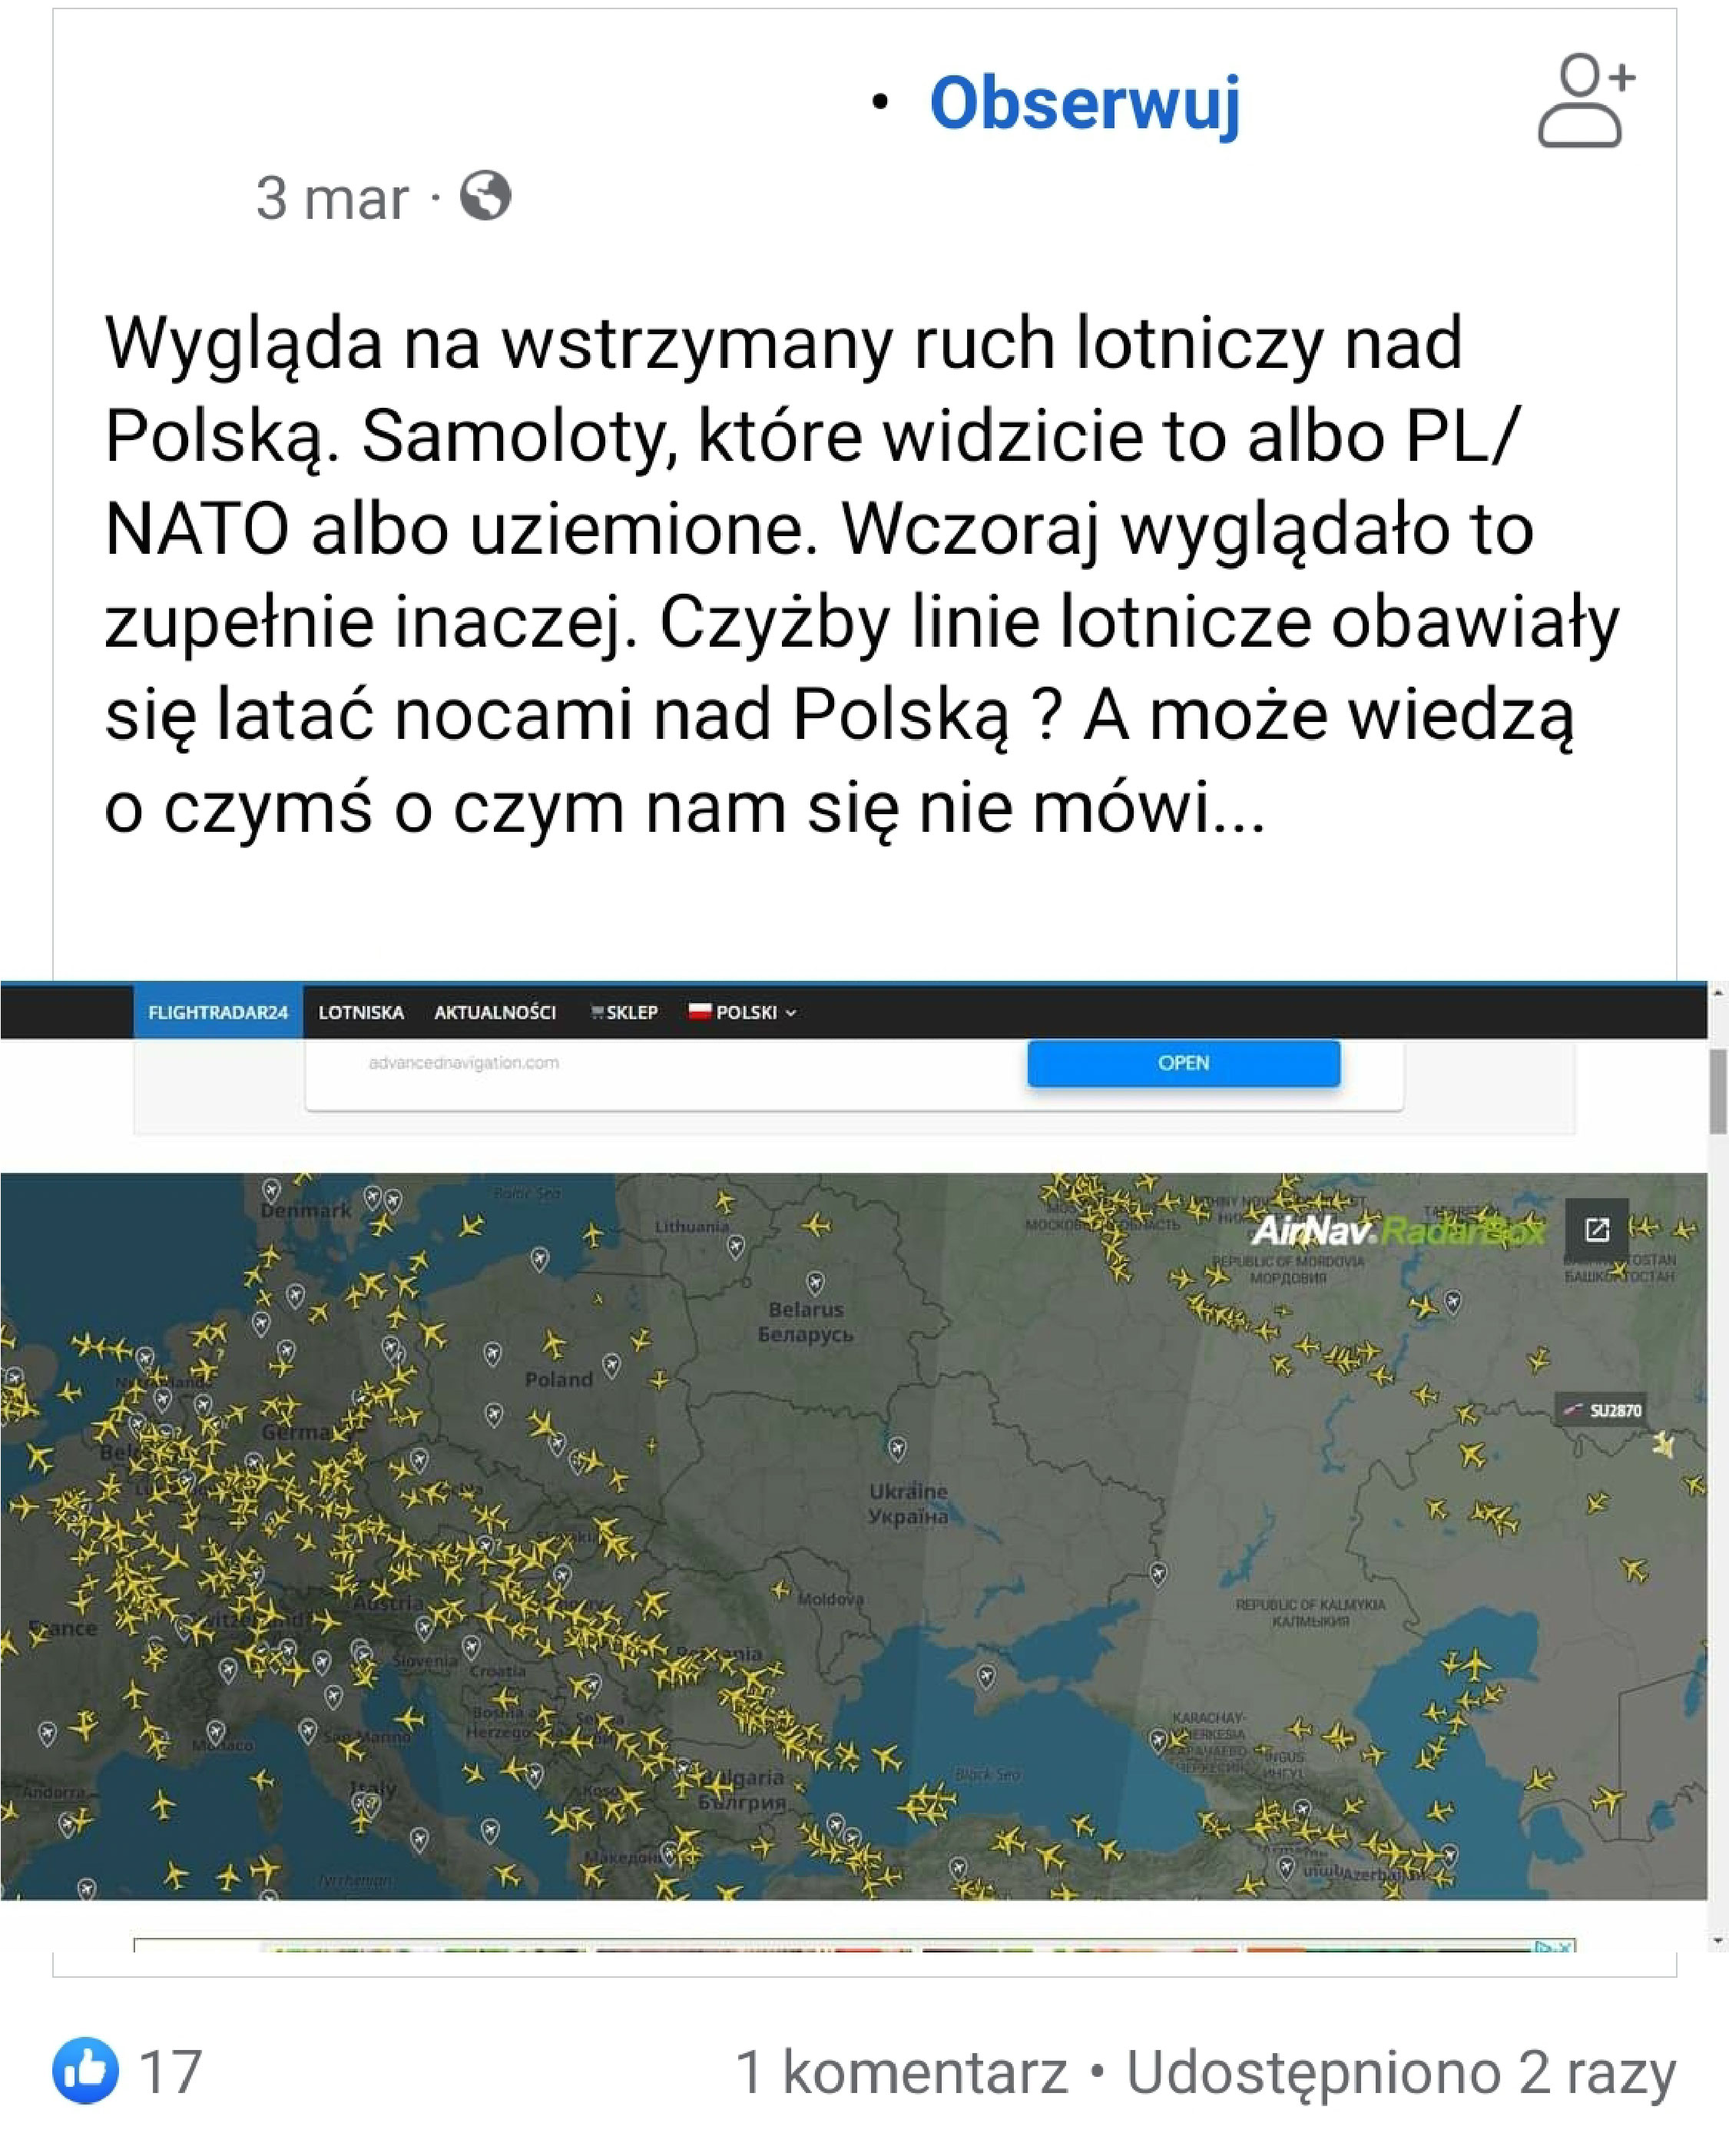 Zrzut ekranu jednego z użytkowników serwisu Facebook o wstrzymaniu ruchu nad Polską, jako przykładu teorii spiskowej a nie wojny w Ukrainie.